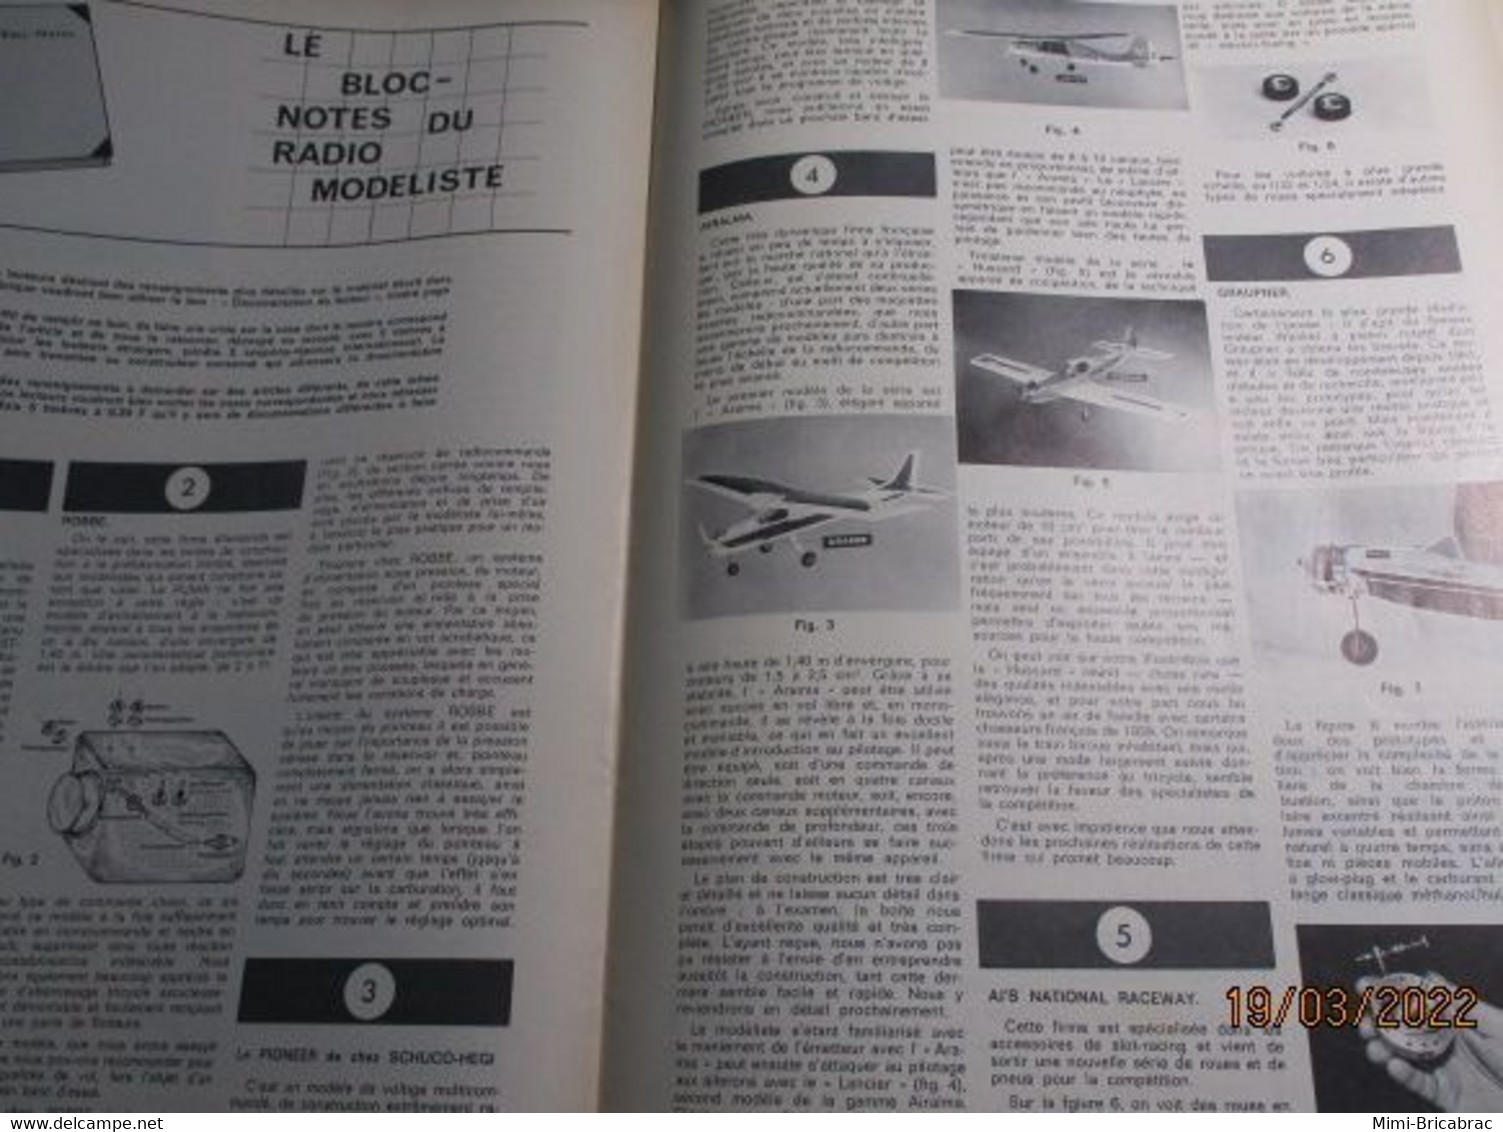 22-A REVUE RADIO-MODELISME  ELECTRONIQUE ANIMATION N°15 De MARS 1968 , TRES BON ETAT , COMPLET - Modèles R/C